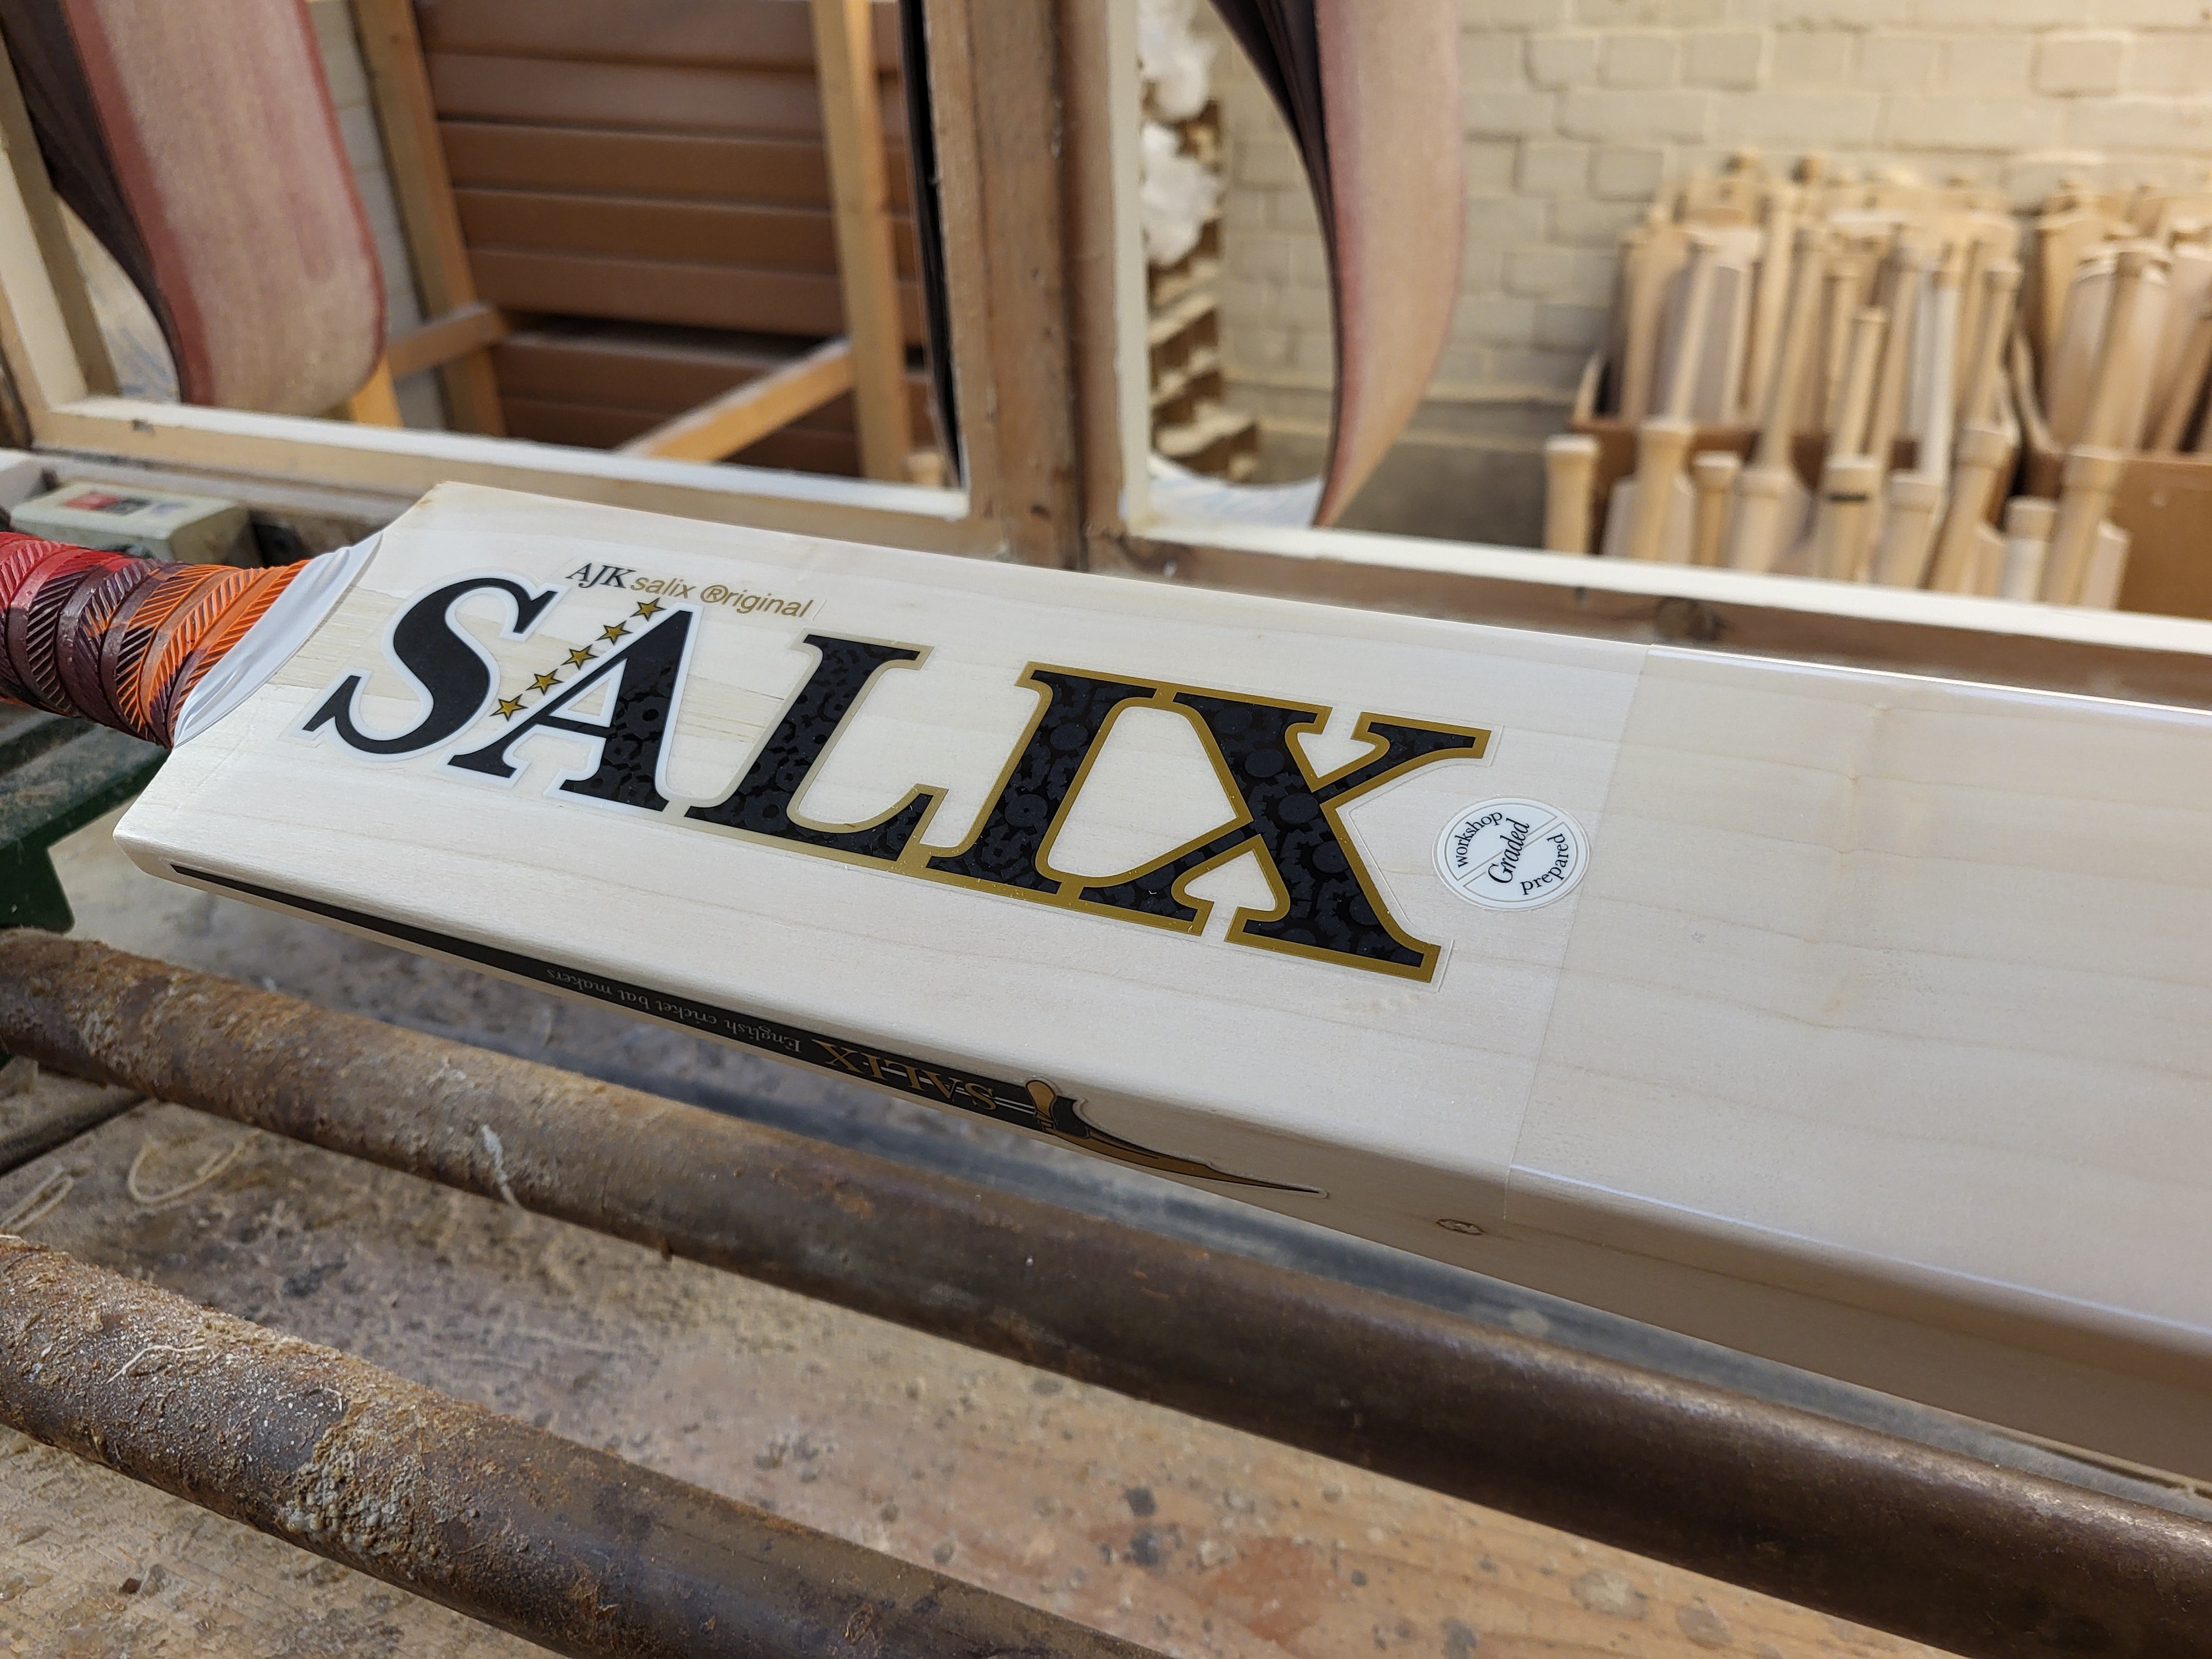 Salix AJK Graded Junior Cricket Bat - The Cricket Store